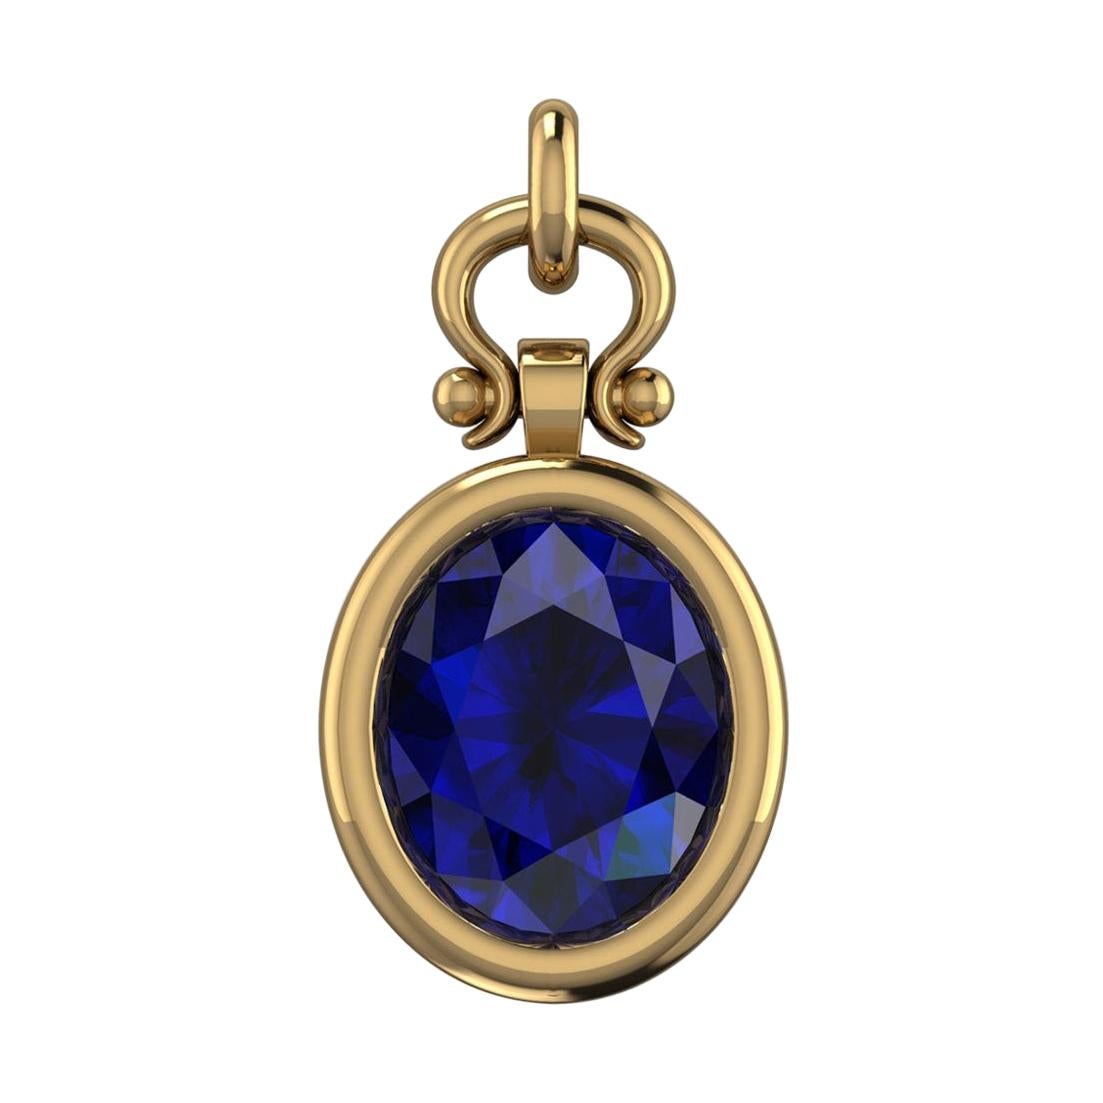 Berberyn Certified 4.28 Carat Oval Blue Sapphire Pendant Necklace in 18k